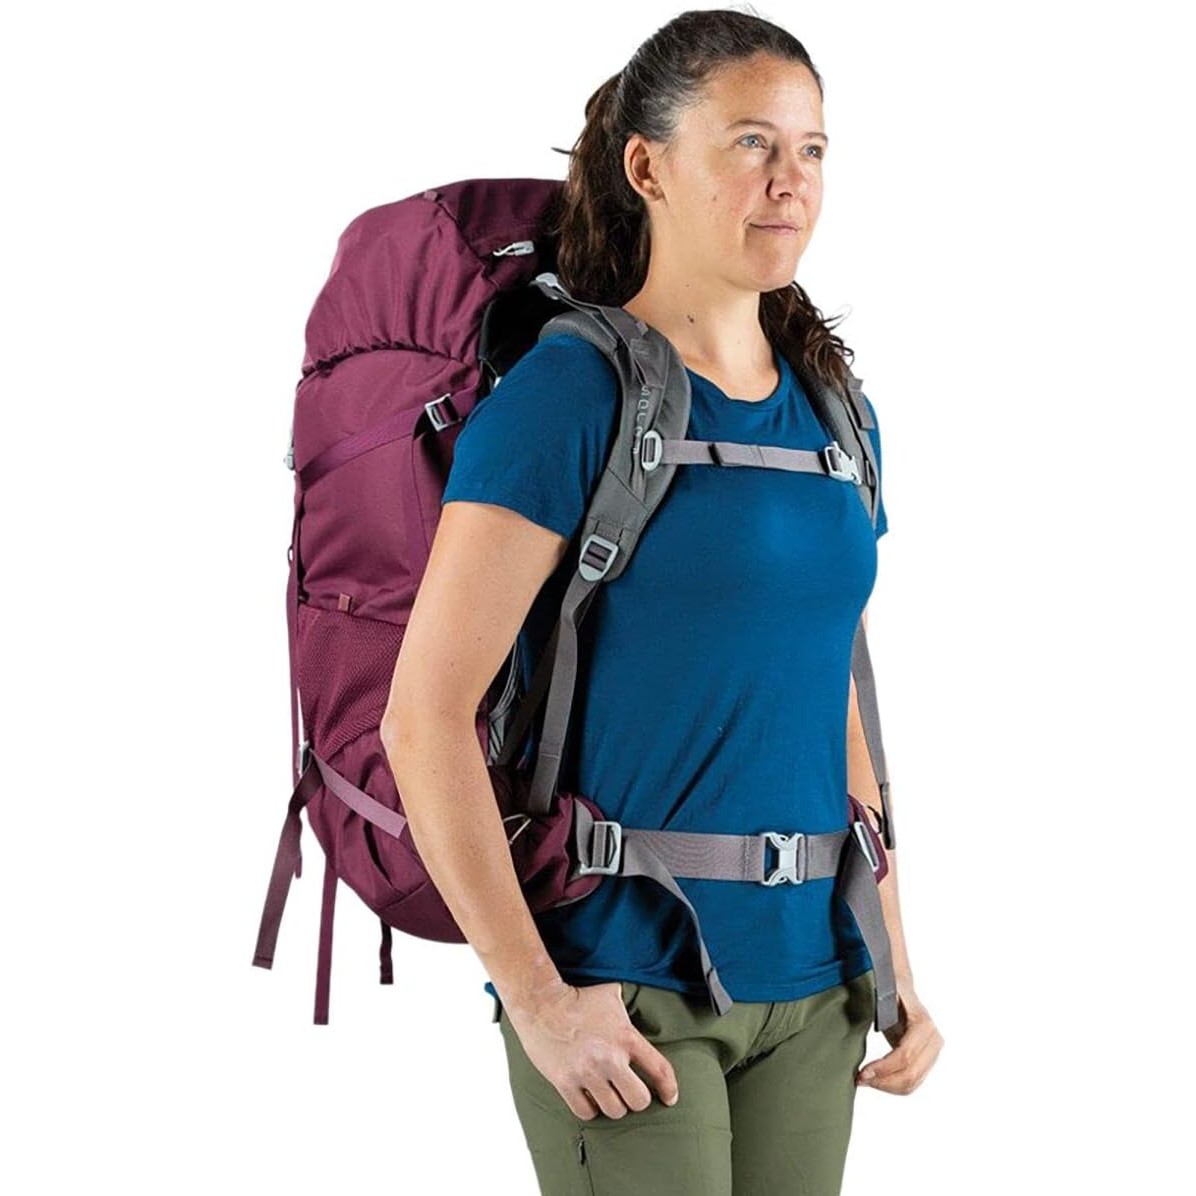 Osprey Renn 65 Women's Trekking Backpack/Rucksack